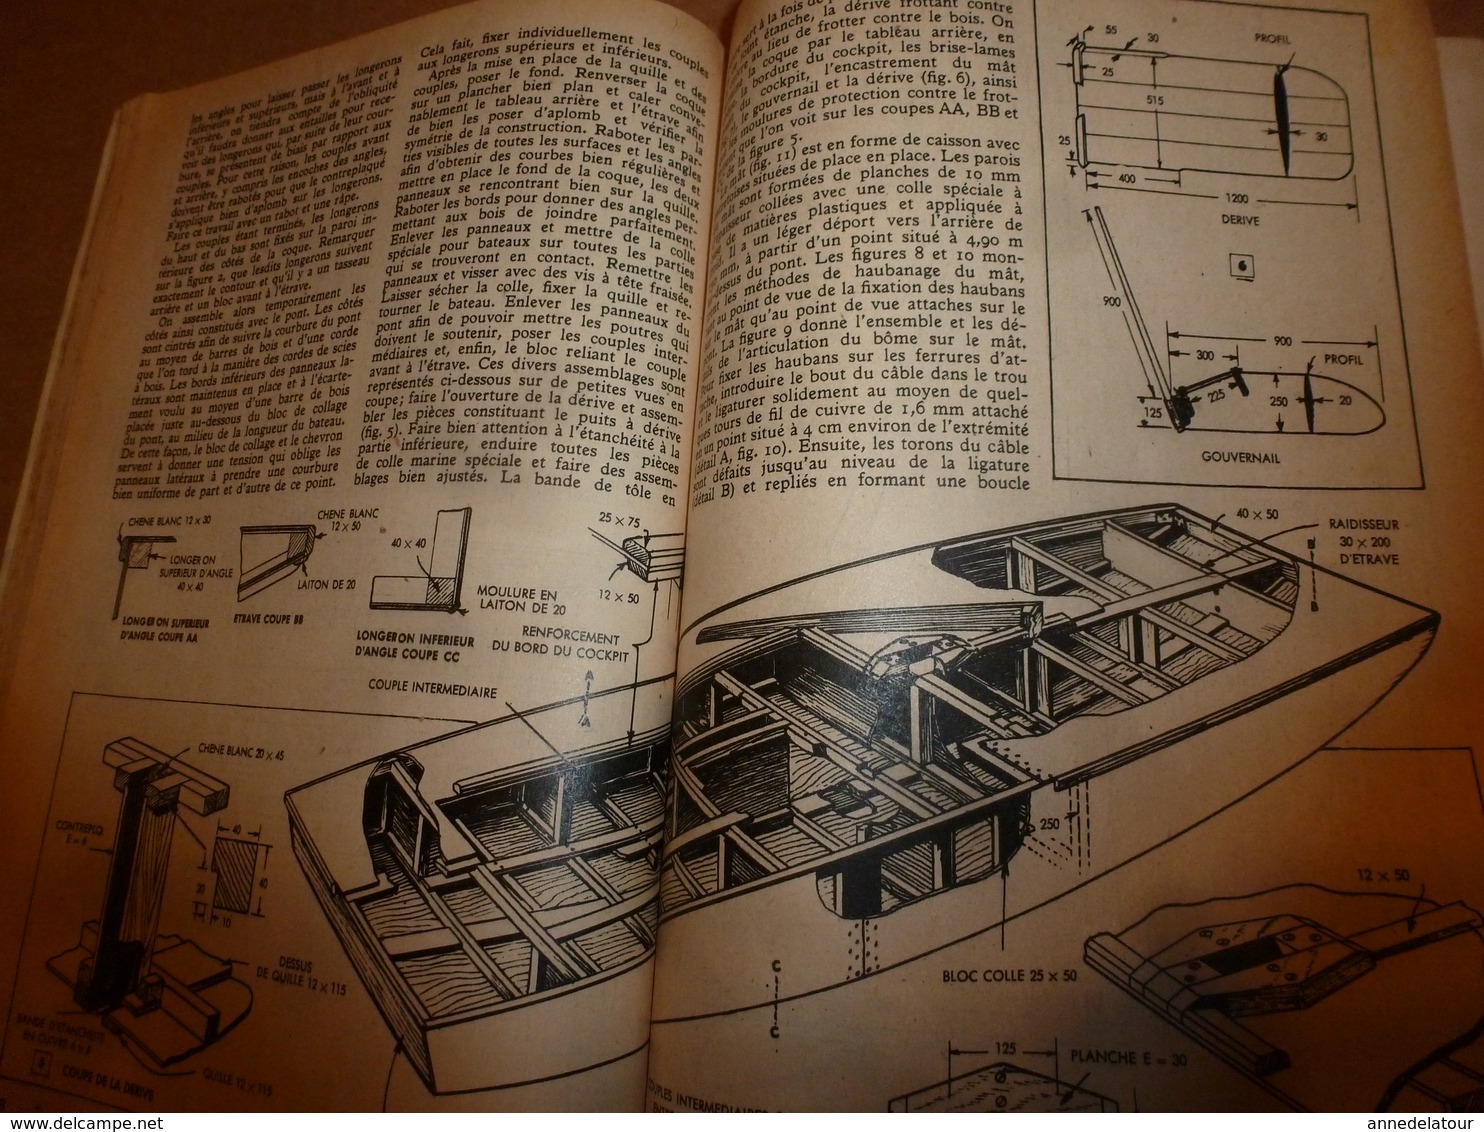 1951 MÉCANIQUE POPULAIRE: Je construis ma maison en contre-plaqué (5e part);Auto a pédales;Solution bateau a voile; etc